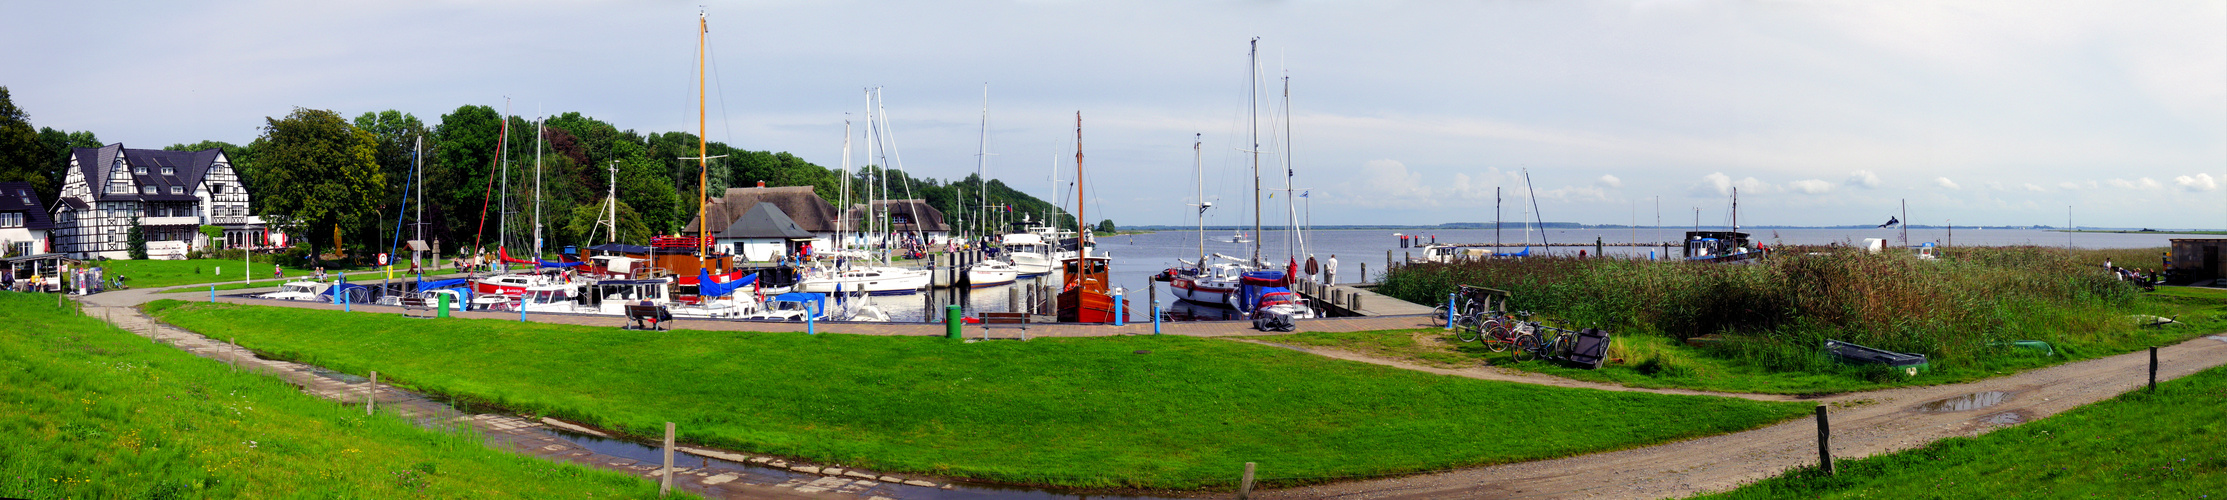 Hafen von Kloster Hiddensee